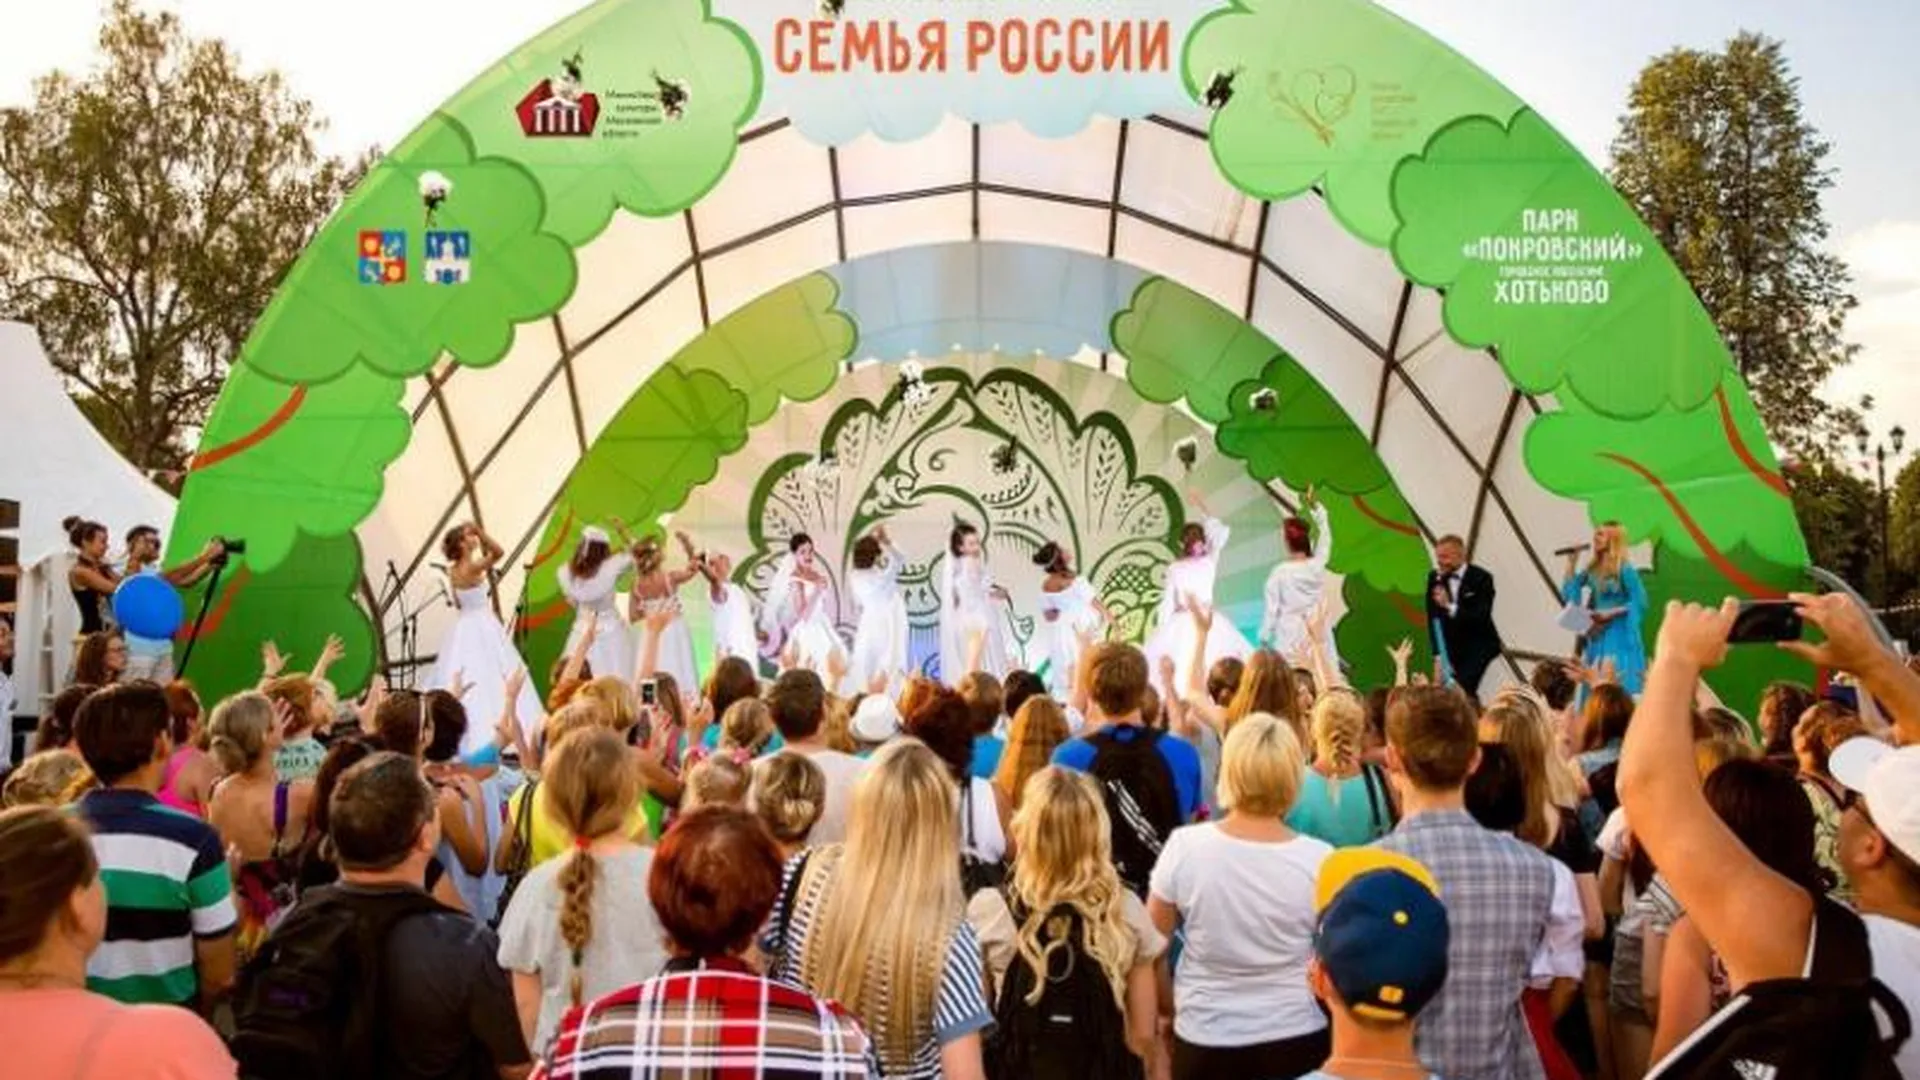 Семь тысяч гостей ожидают на фестивале «Семья России» в Хотьково